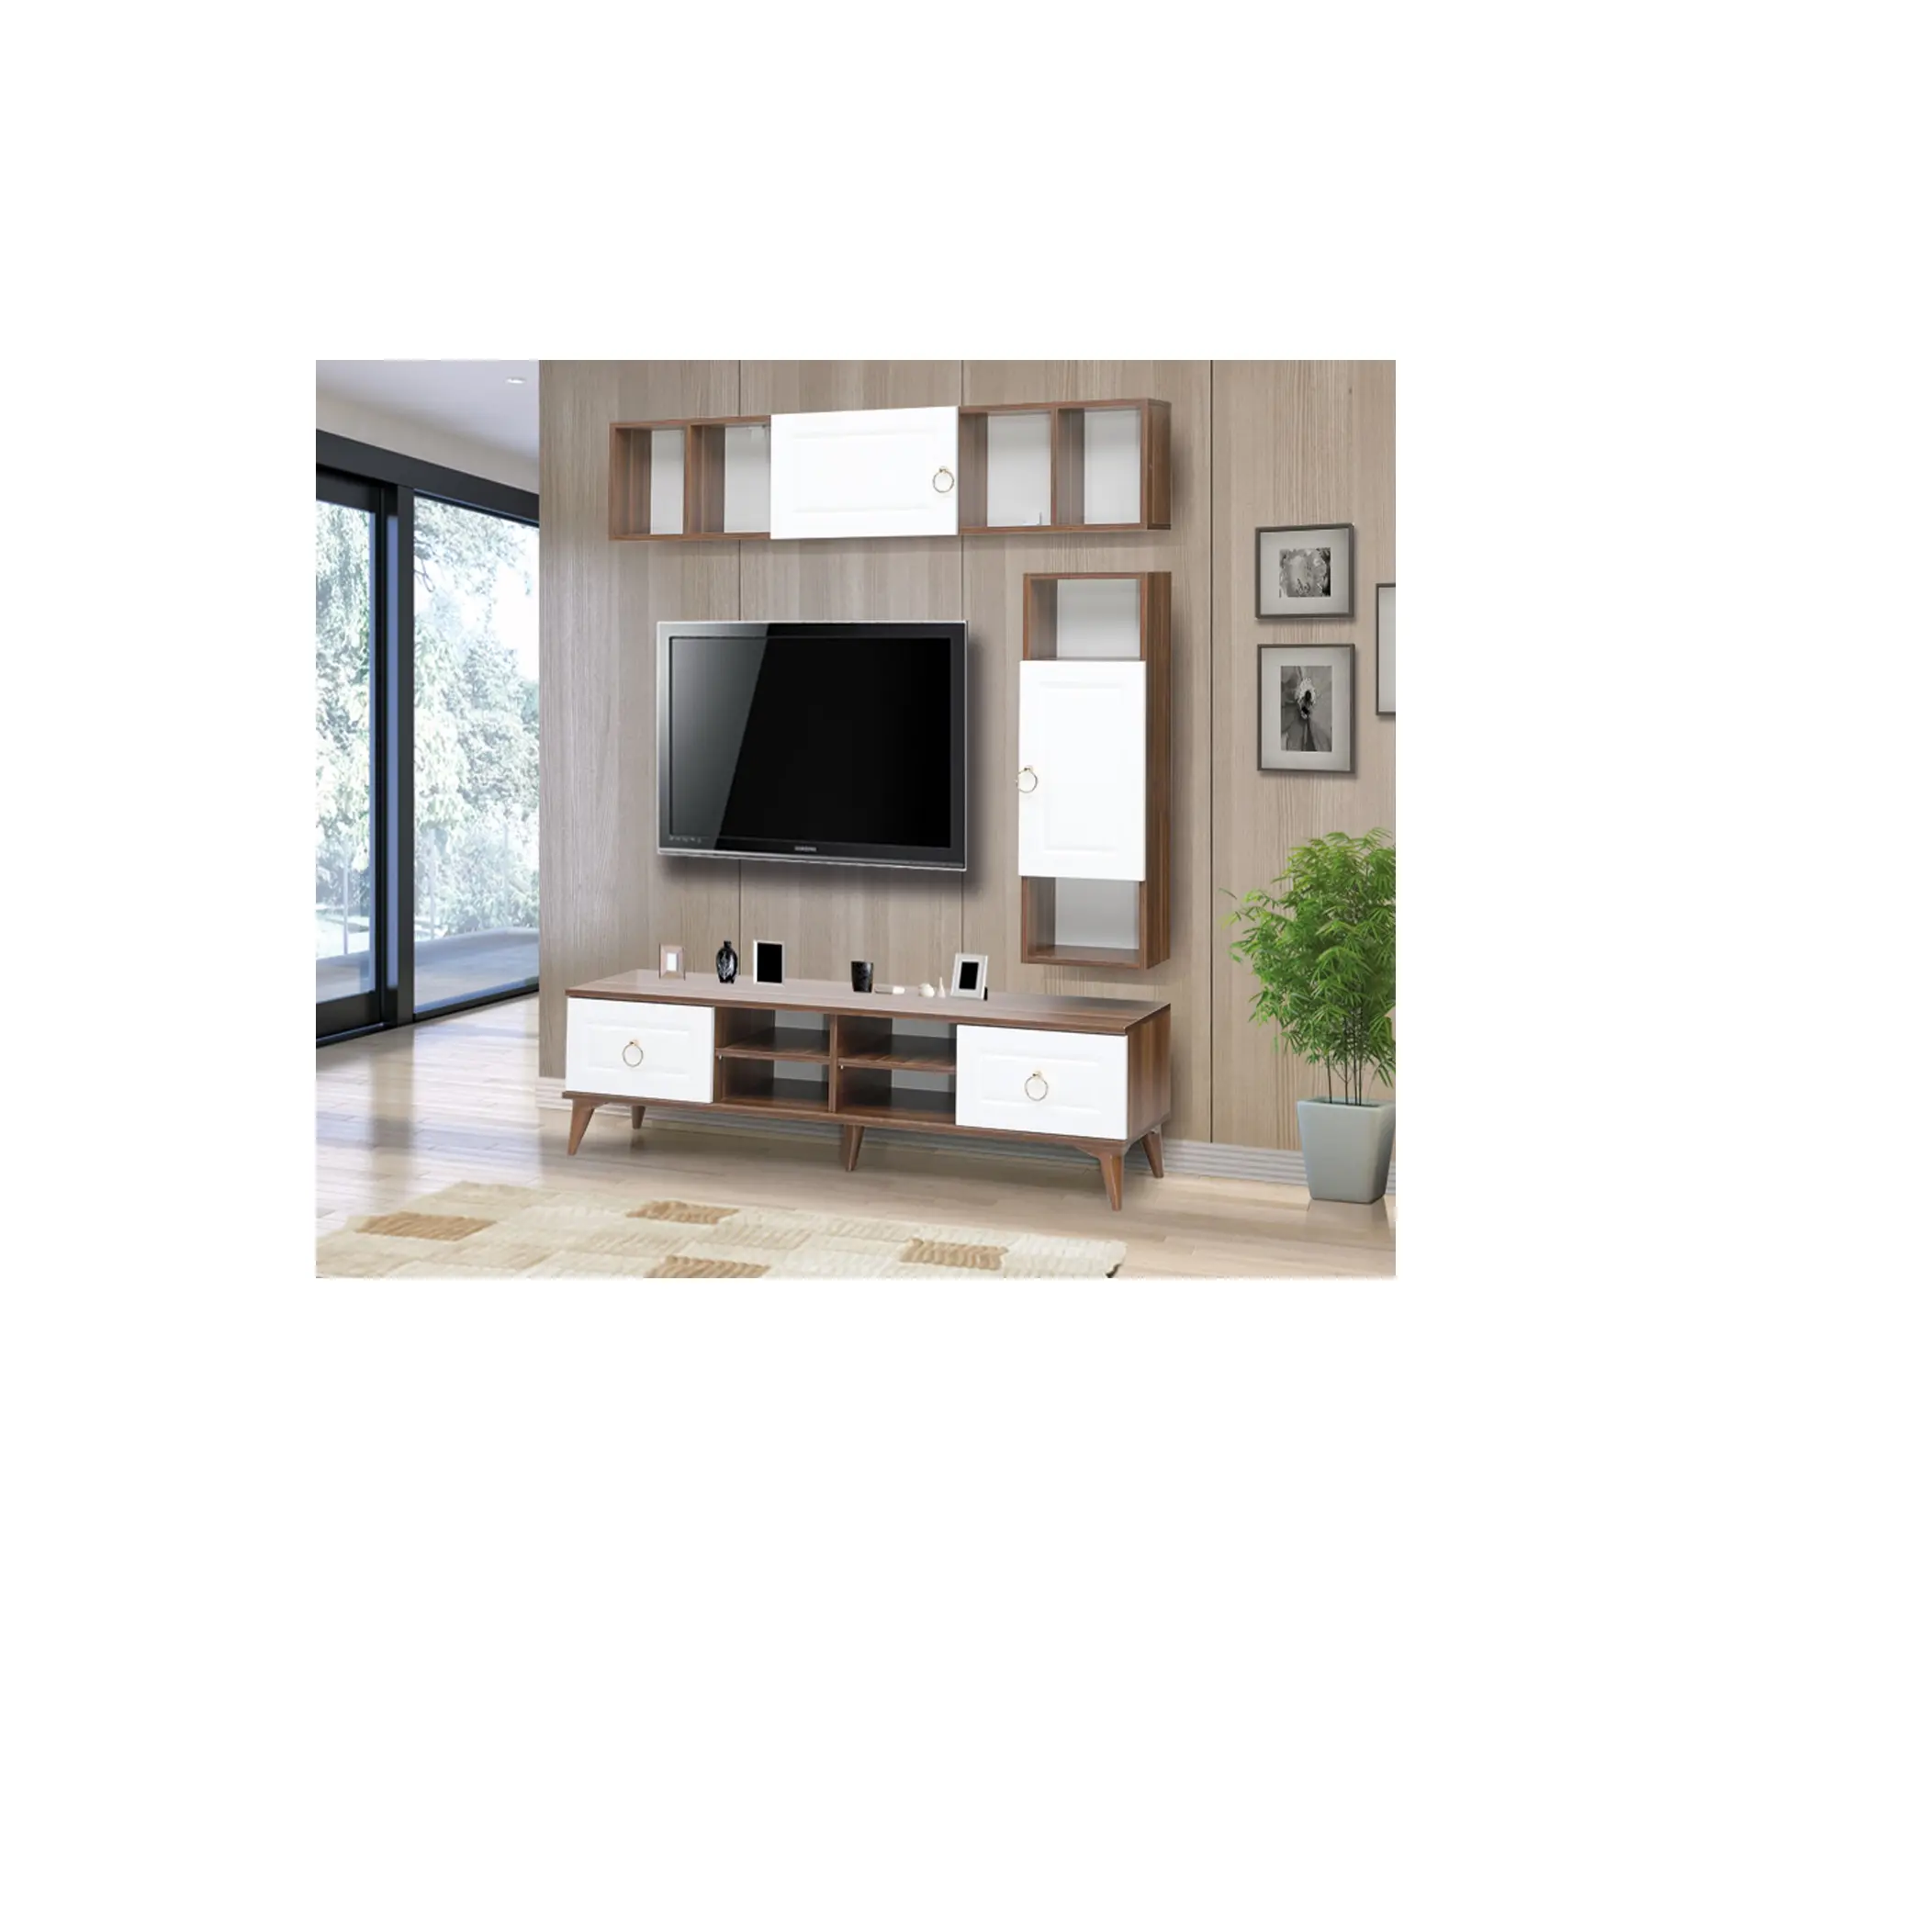 Подставка для телевизора в современном стиле, современный стеллаж для ТВ и приставки, деревянная ТВ-подставка для консоли, Сделано в Турции